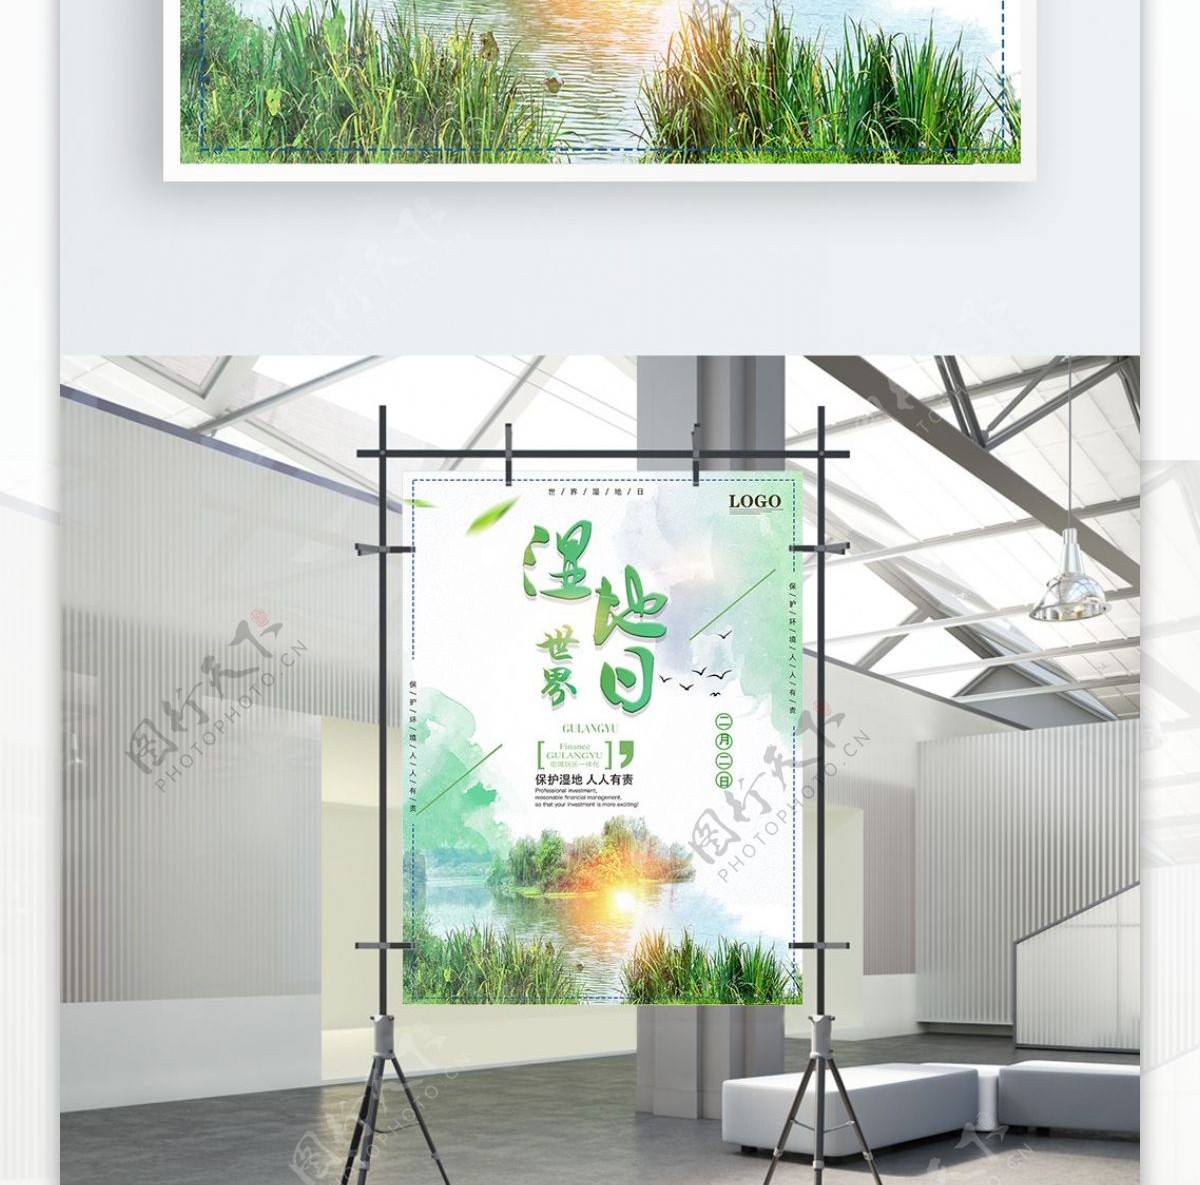 简约绿色世界湿地日海报设计PSD模板